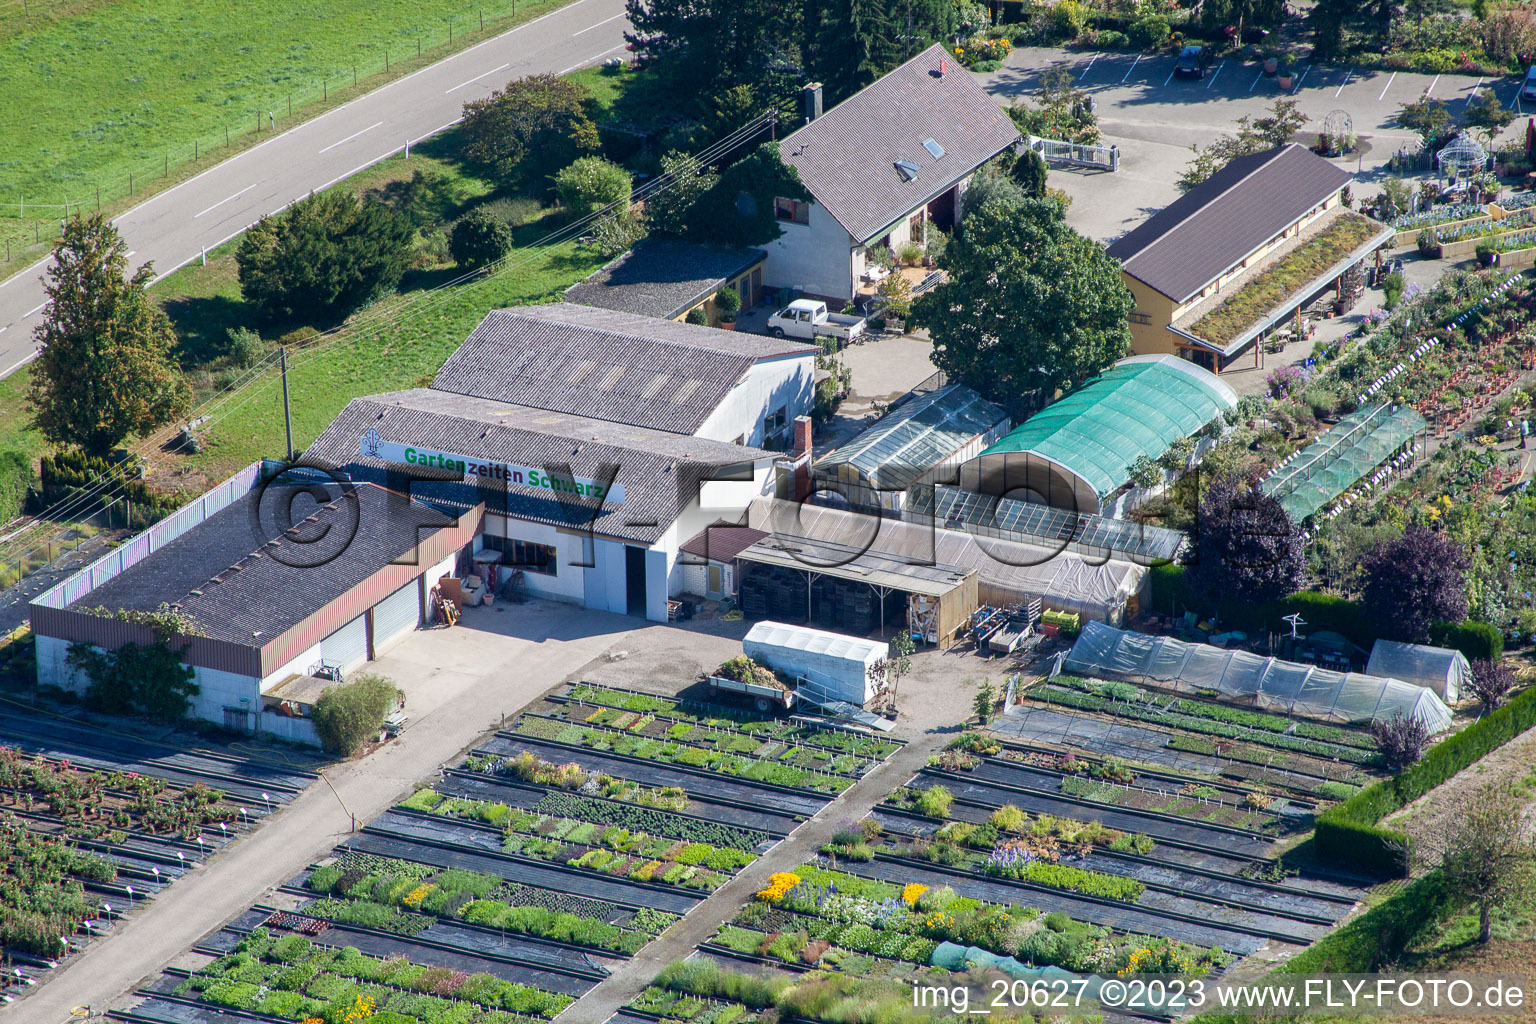 Luftbild von Gartenzeiten Schwarz im Ortsteil Bodersweier in Kehl im Bundesland Baden-Württemberg, Deutschland